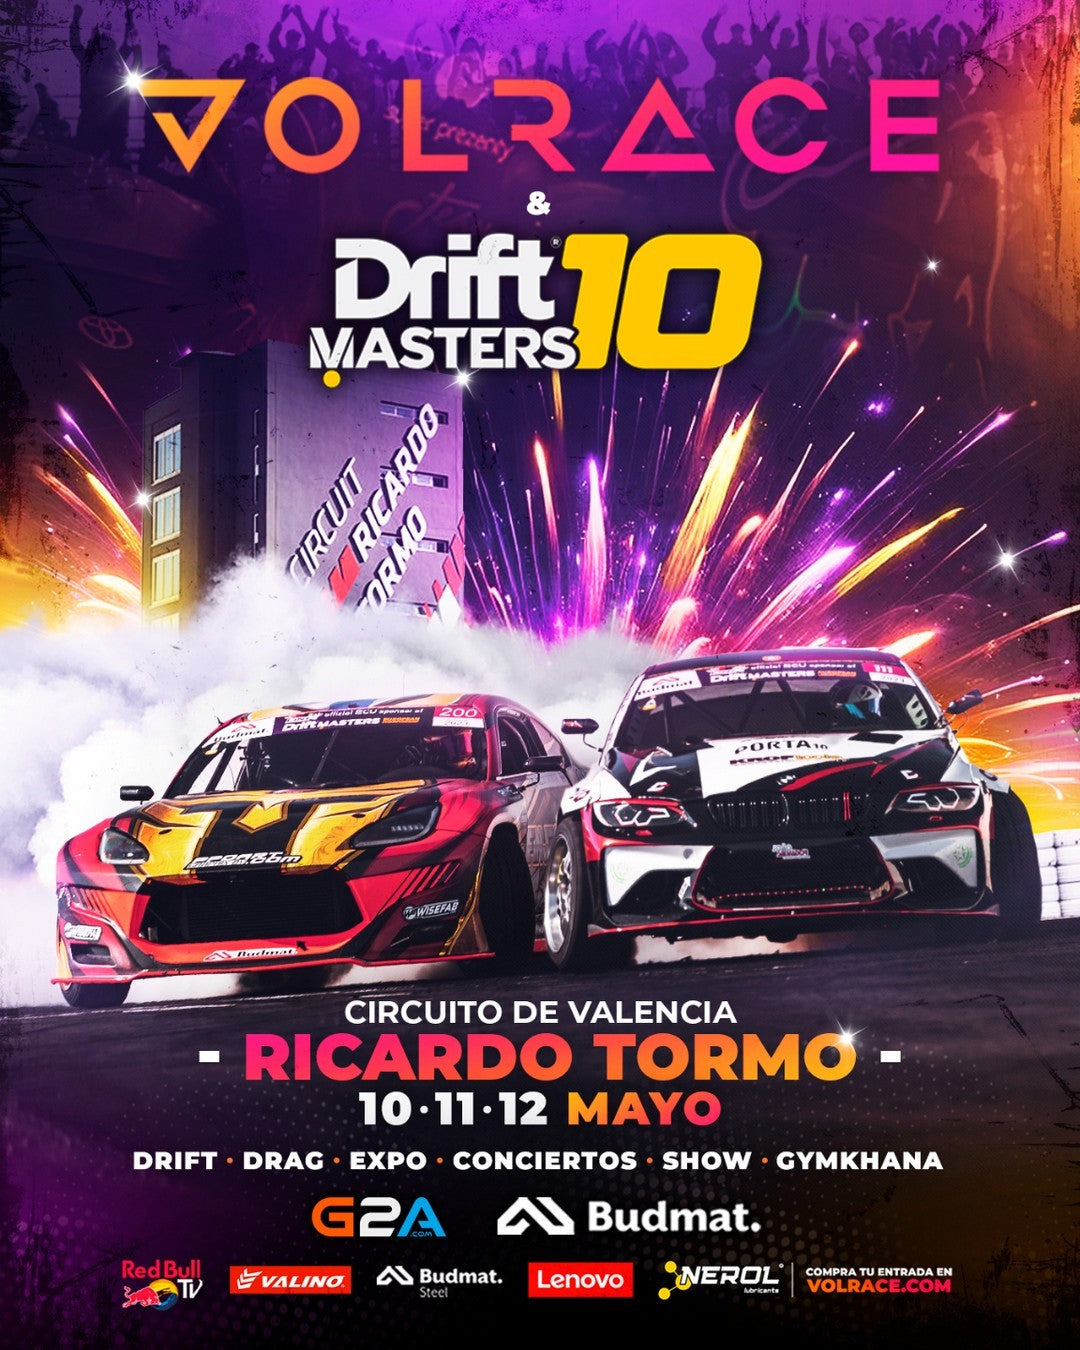 Volrace - Drift Master 10